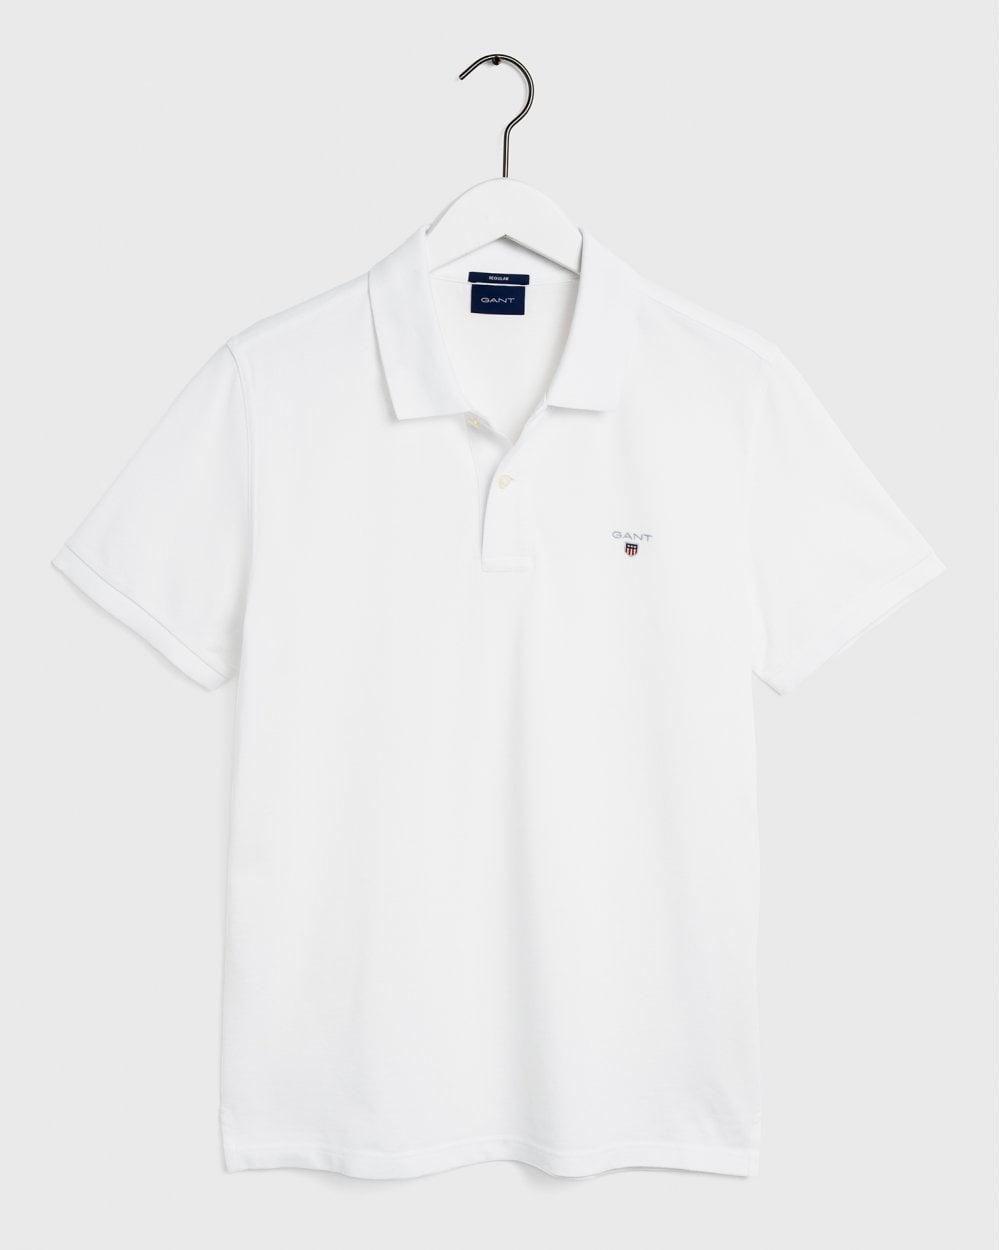 Gant - White Original Regular Fit Pique Polo Shirt